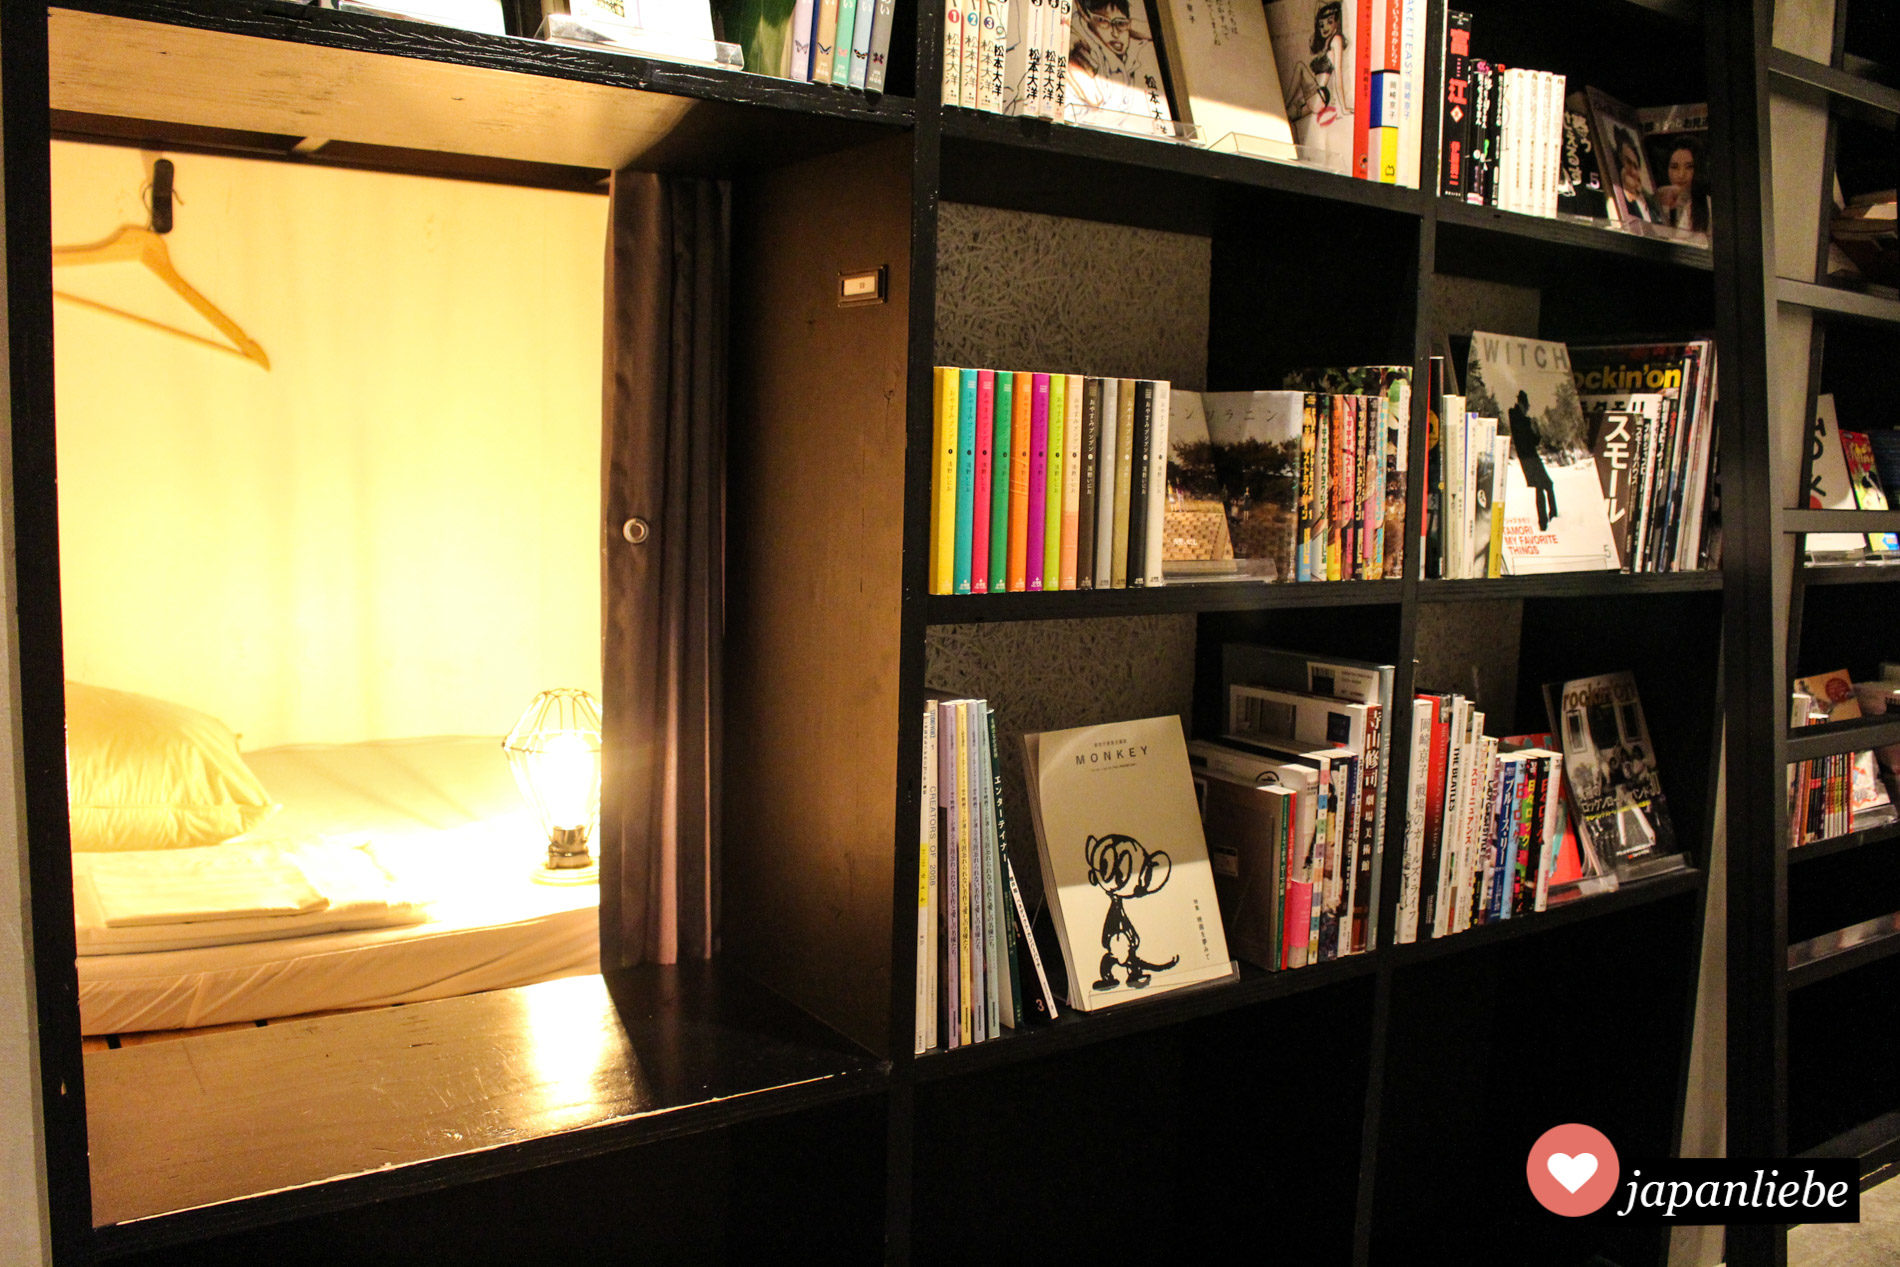 Die Schlafkojen im "Book & Bed Tokyo" befinden sich tatsächlich im Bücherregal selbst.